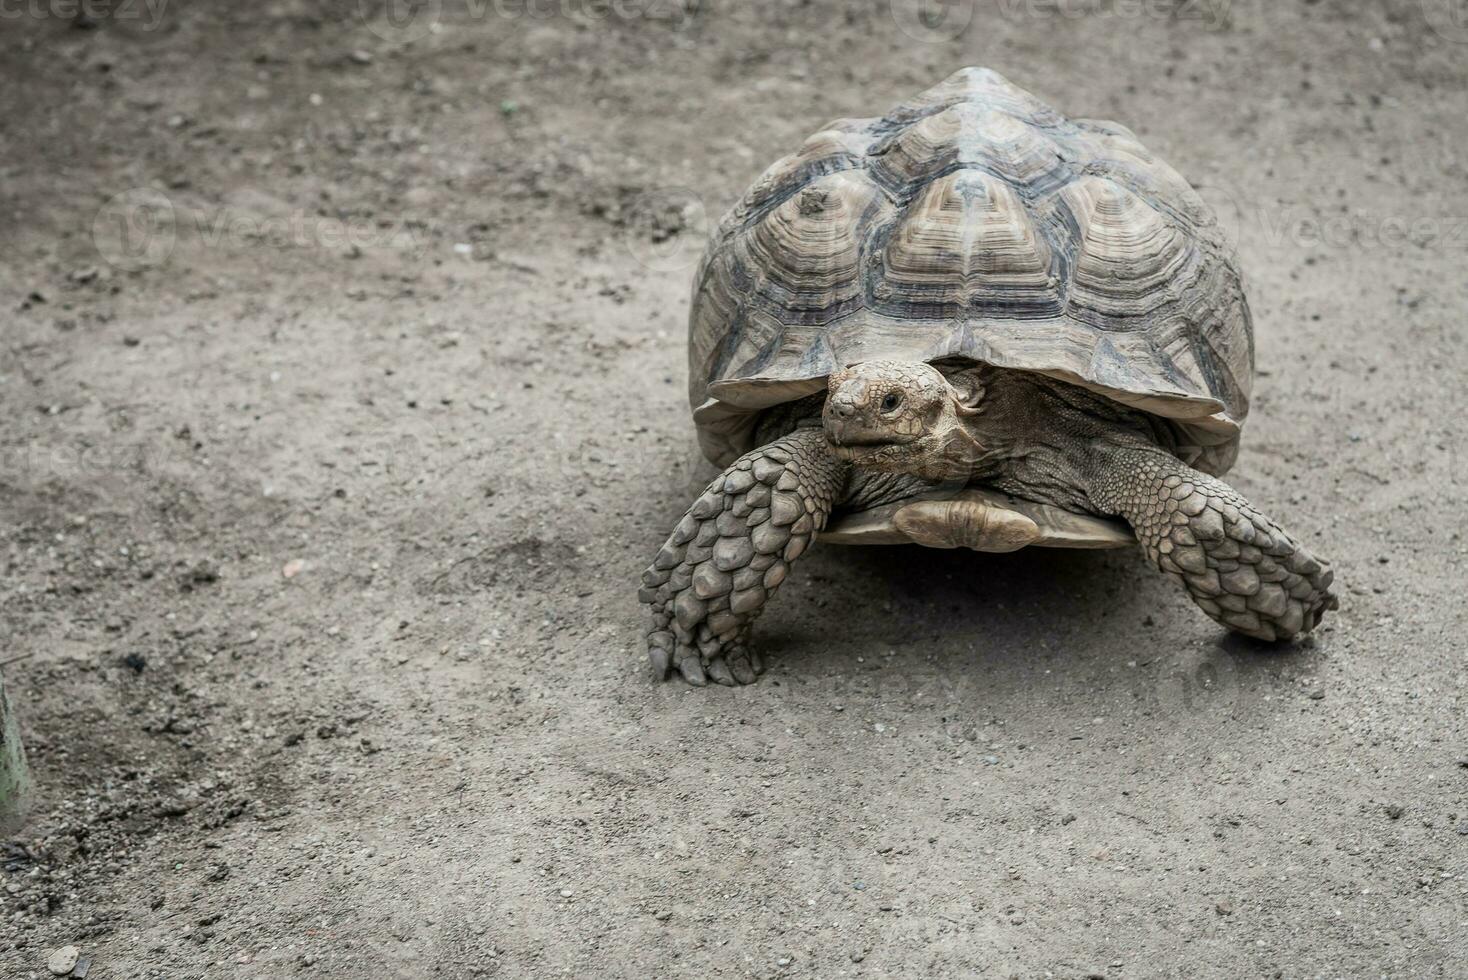 jätte aldabra sköldpadda. aldabrachelys gigantea foto